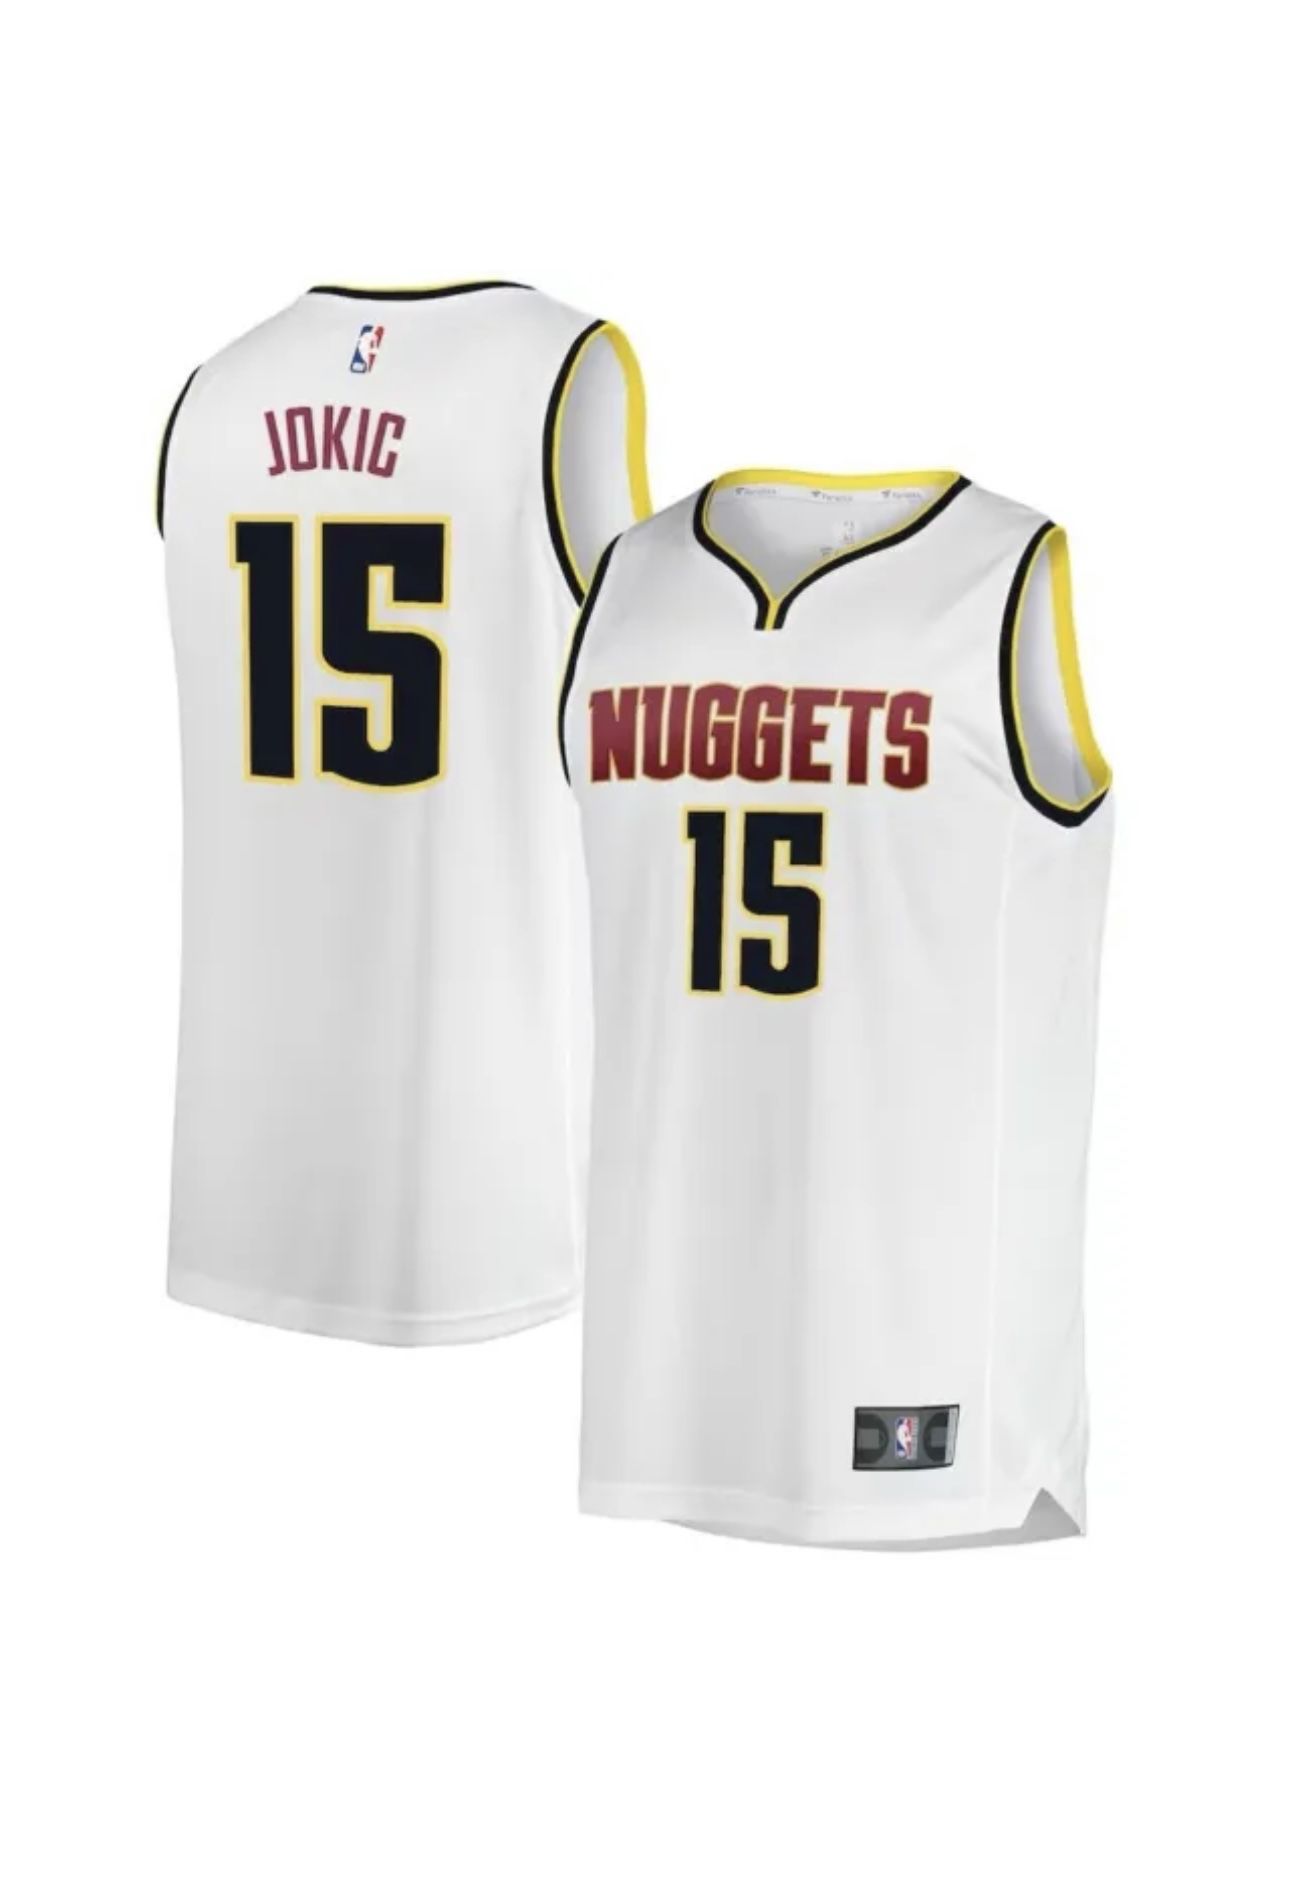 Denver Nuggets Jersey for Sale in Las Vegas, NV - OfferUp